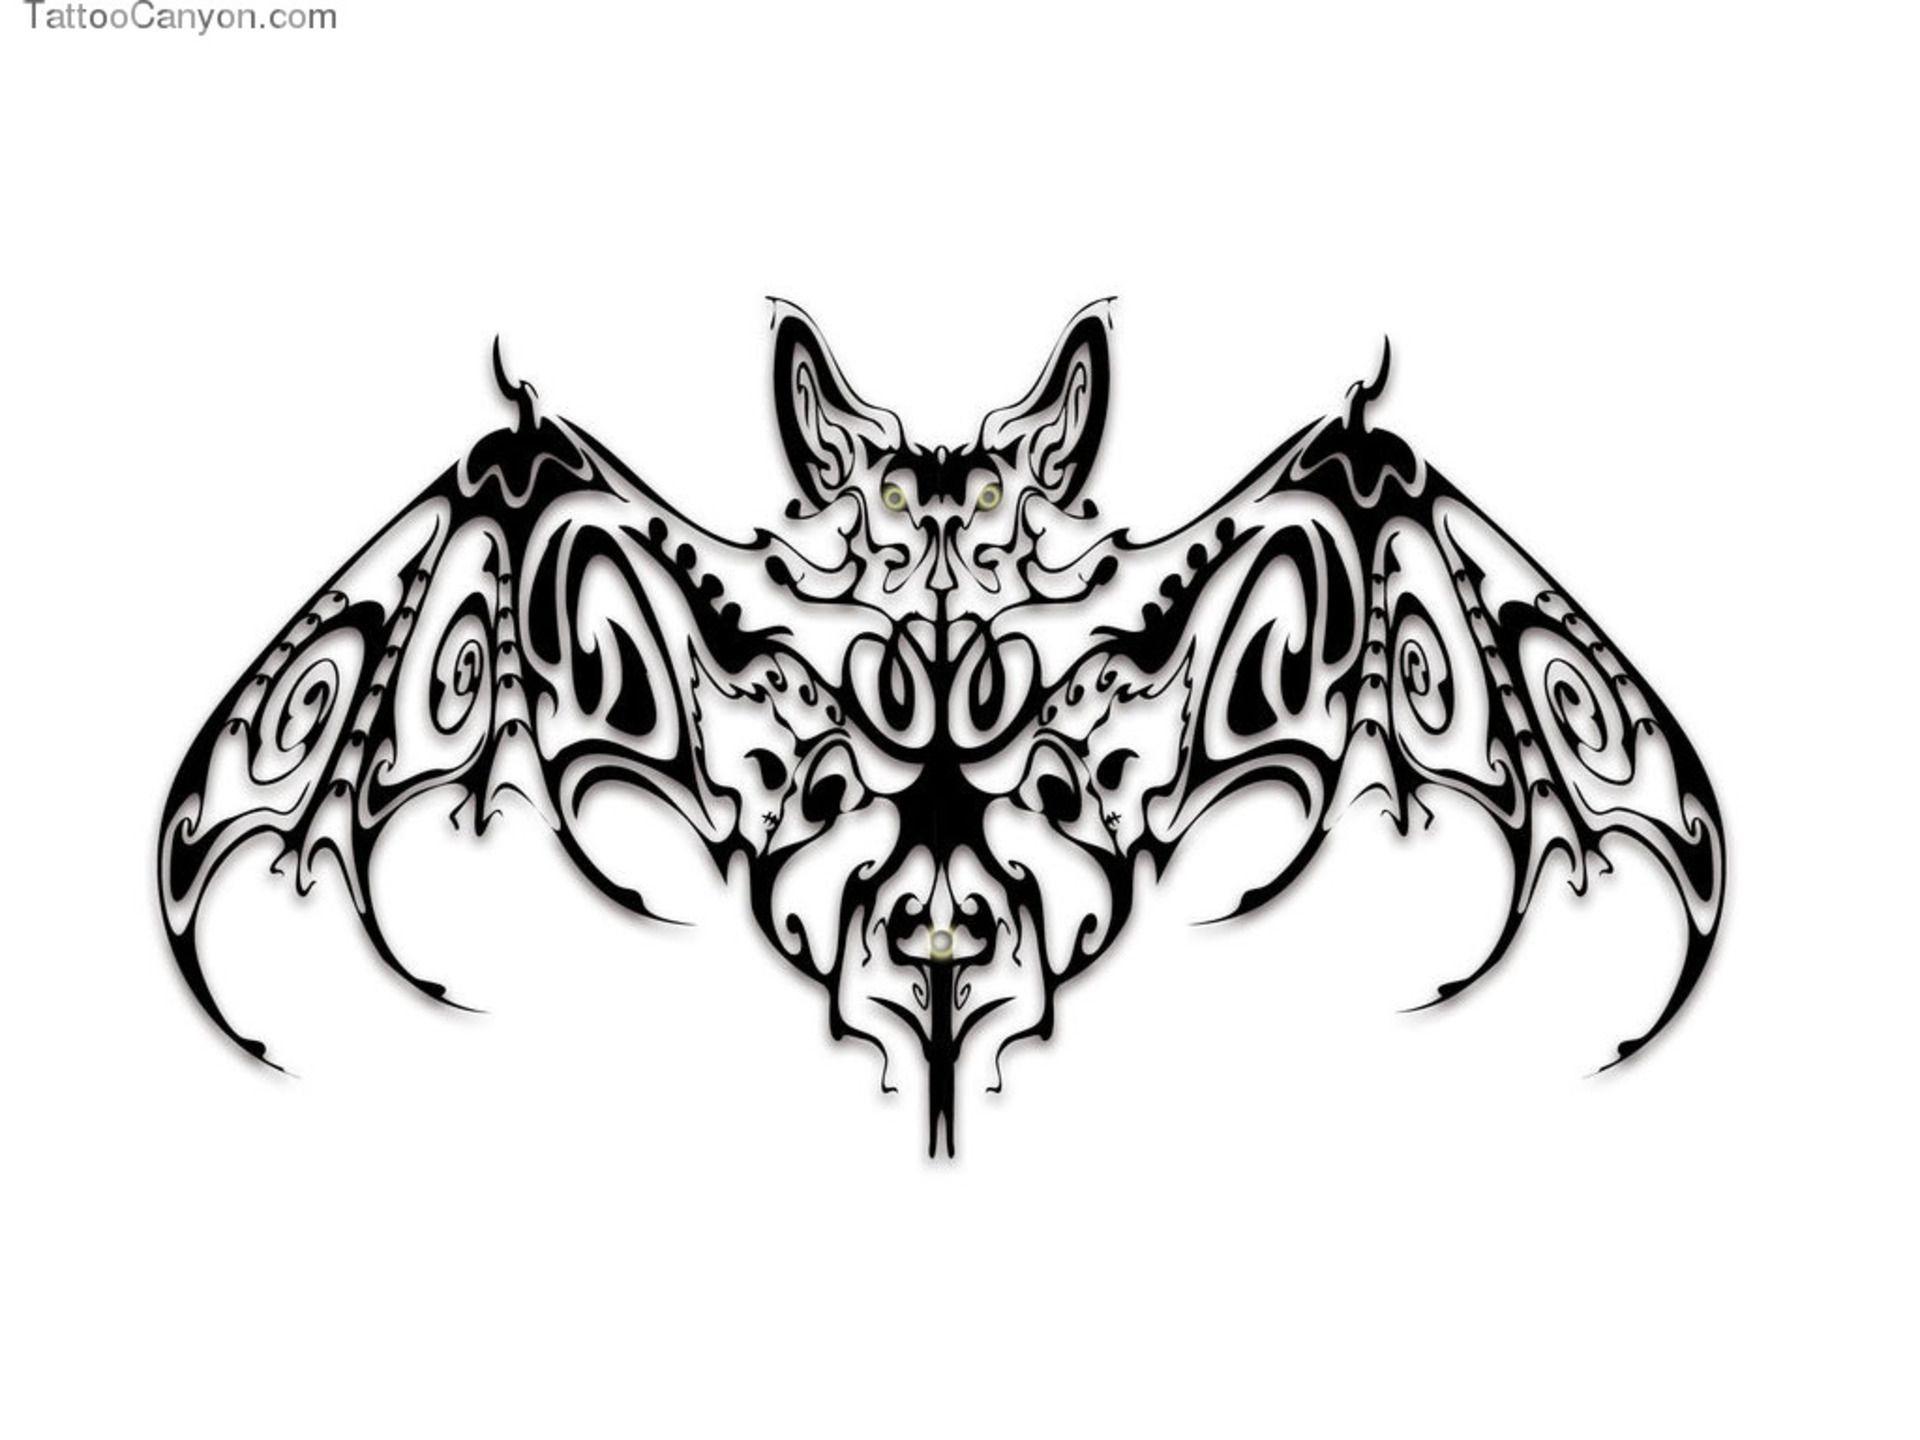 Free Designs Stylized Bat Tattoo Design Wallpaper 1920x1440 px